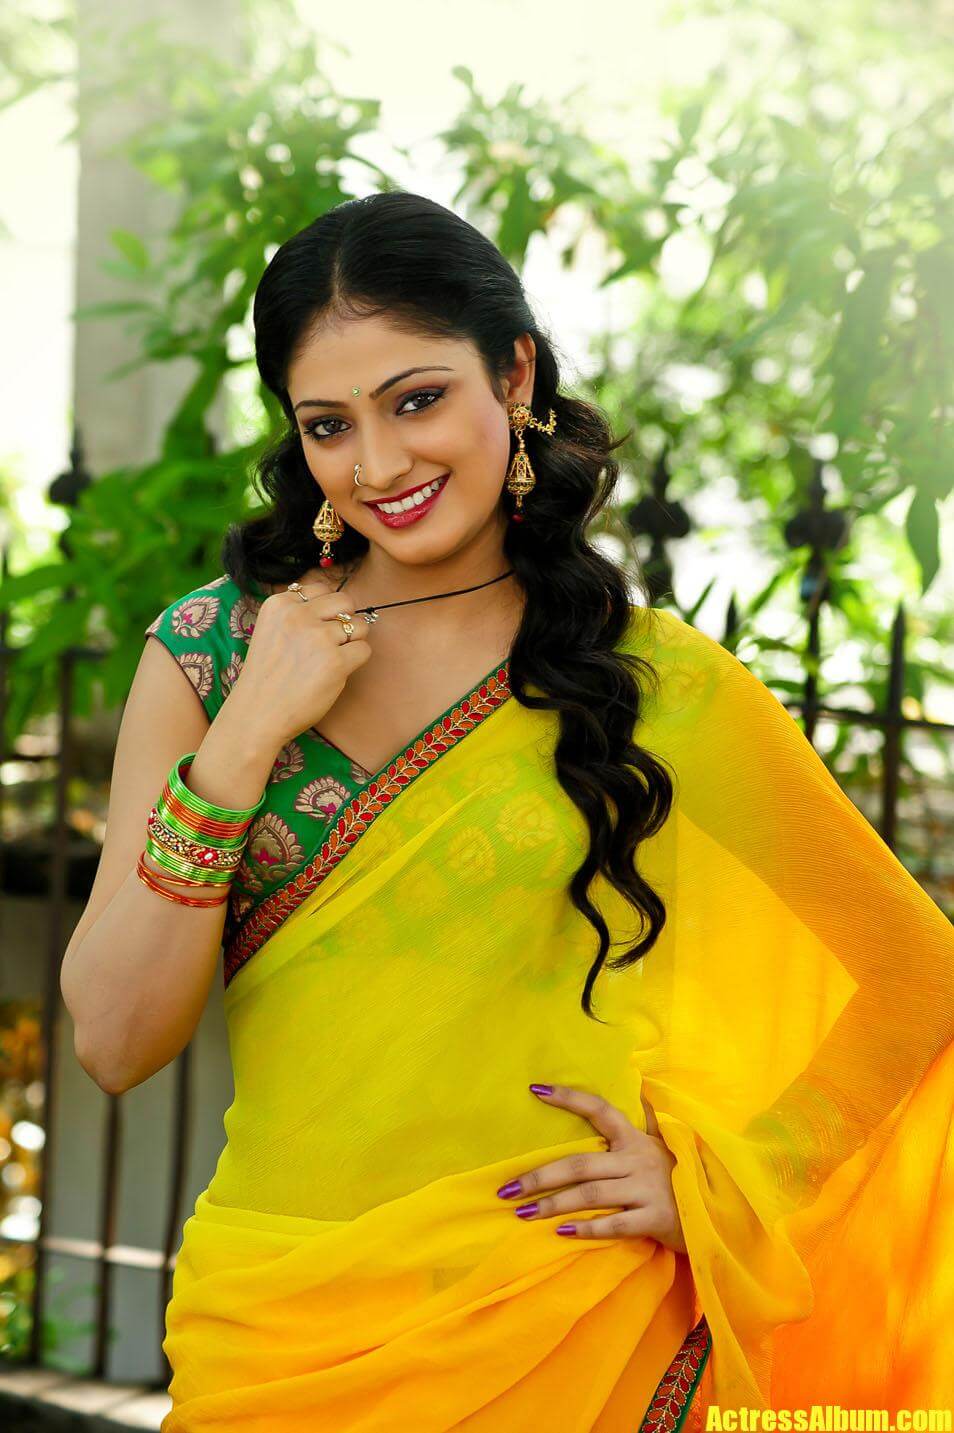 Actress Hari Priya Hot Sex Nude Photos - Haripriya Latest Hot n Spicy Pics in Yellow Saree - Actress Album